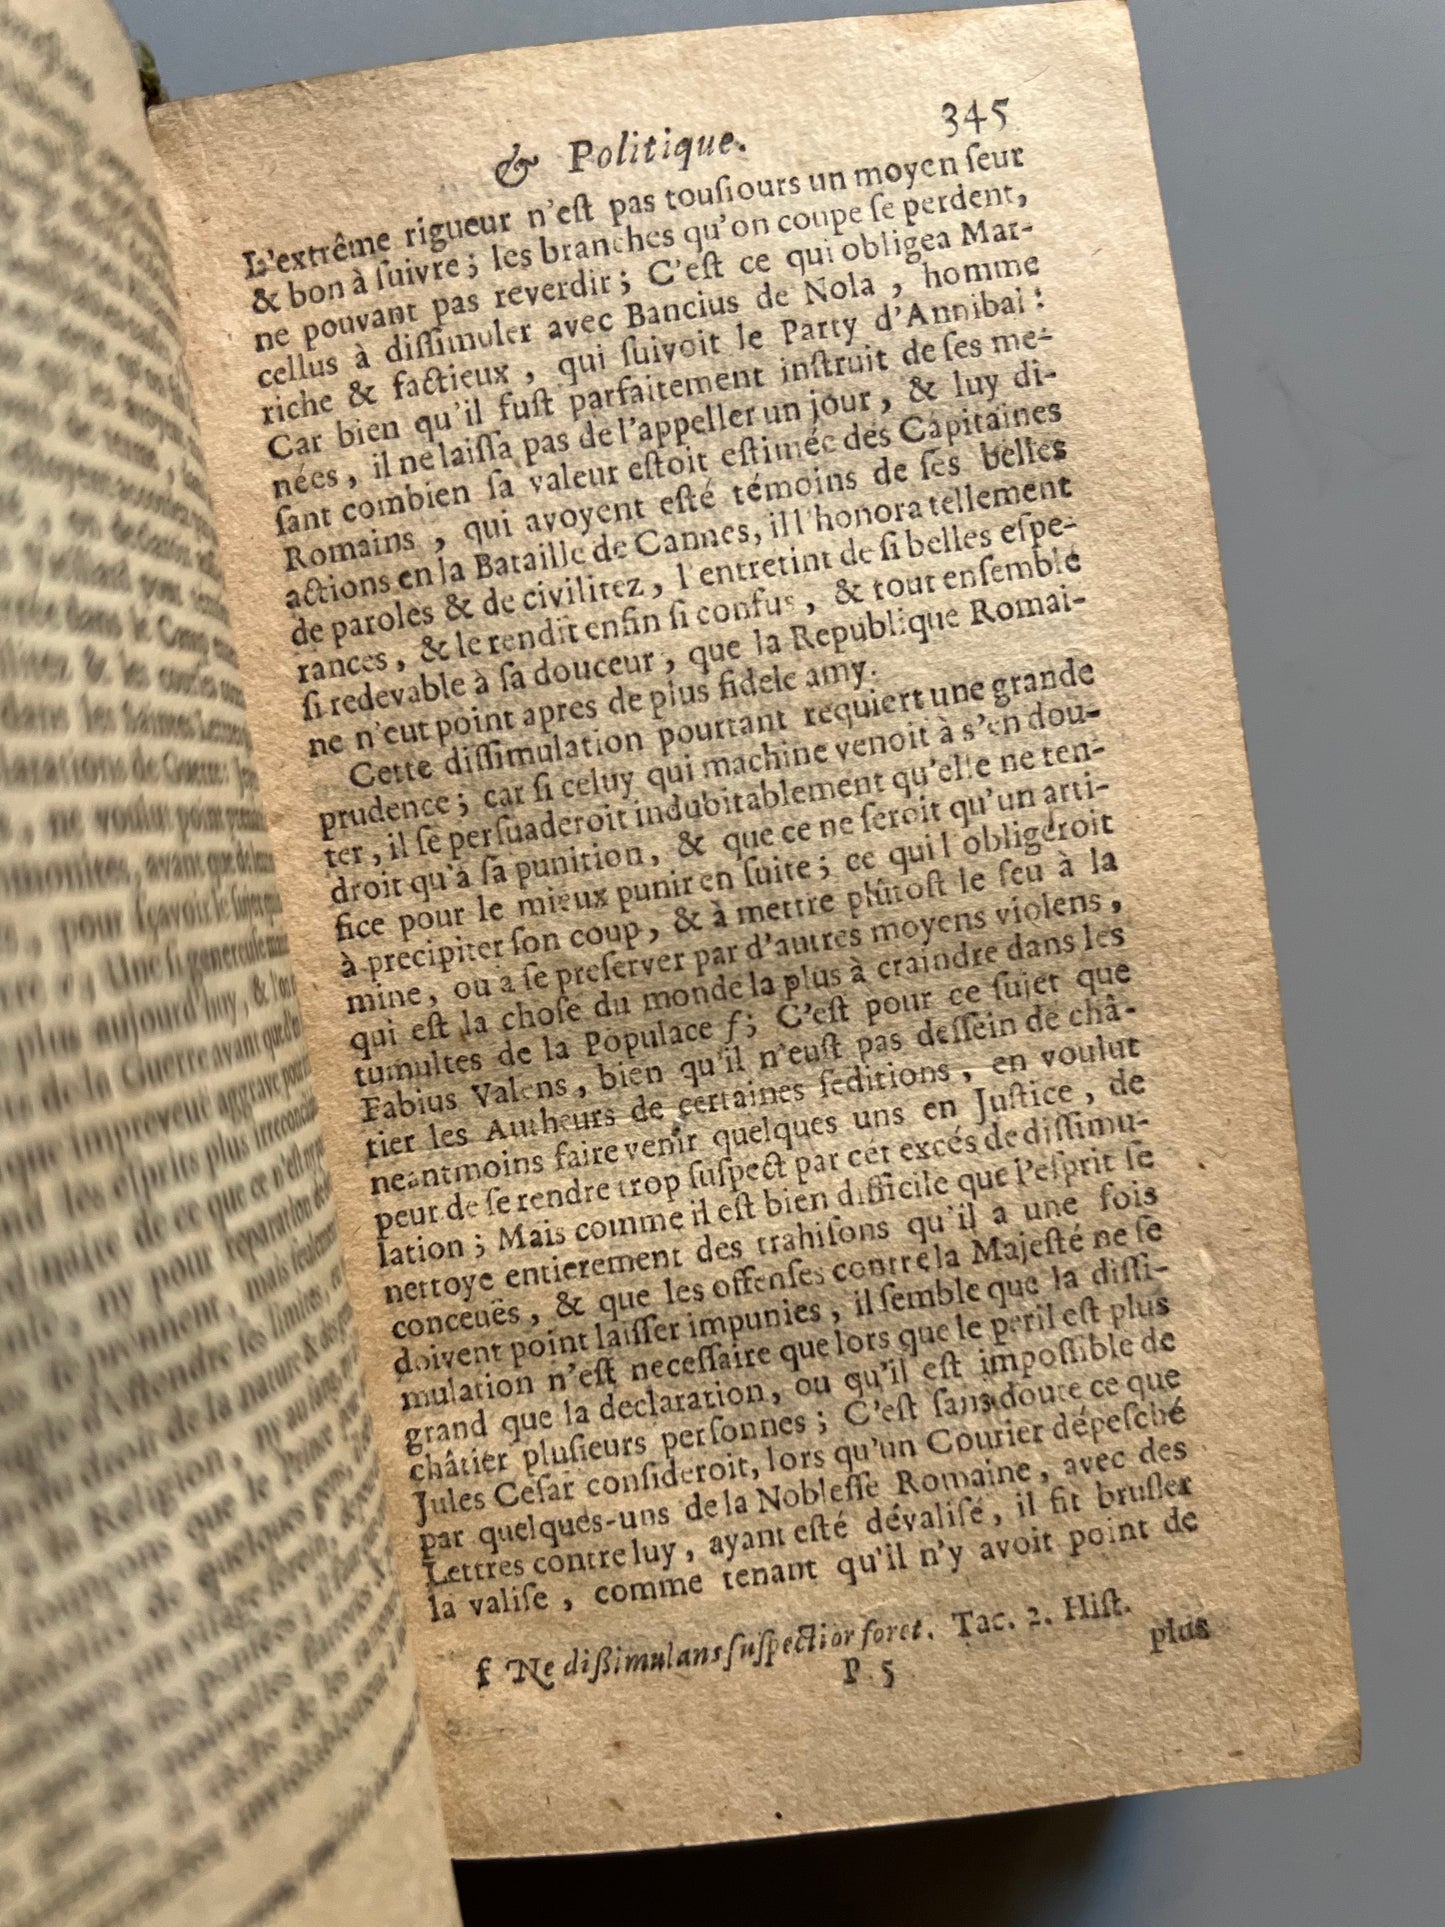 Le Prince chrestien et politique, traduit de l'espagnol de Dom Diègue Savedra - Compagnie des Libraires du palais, 1668